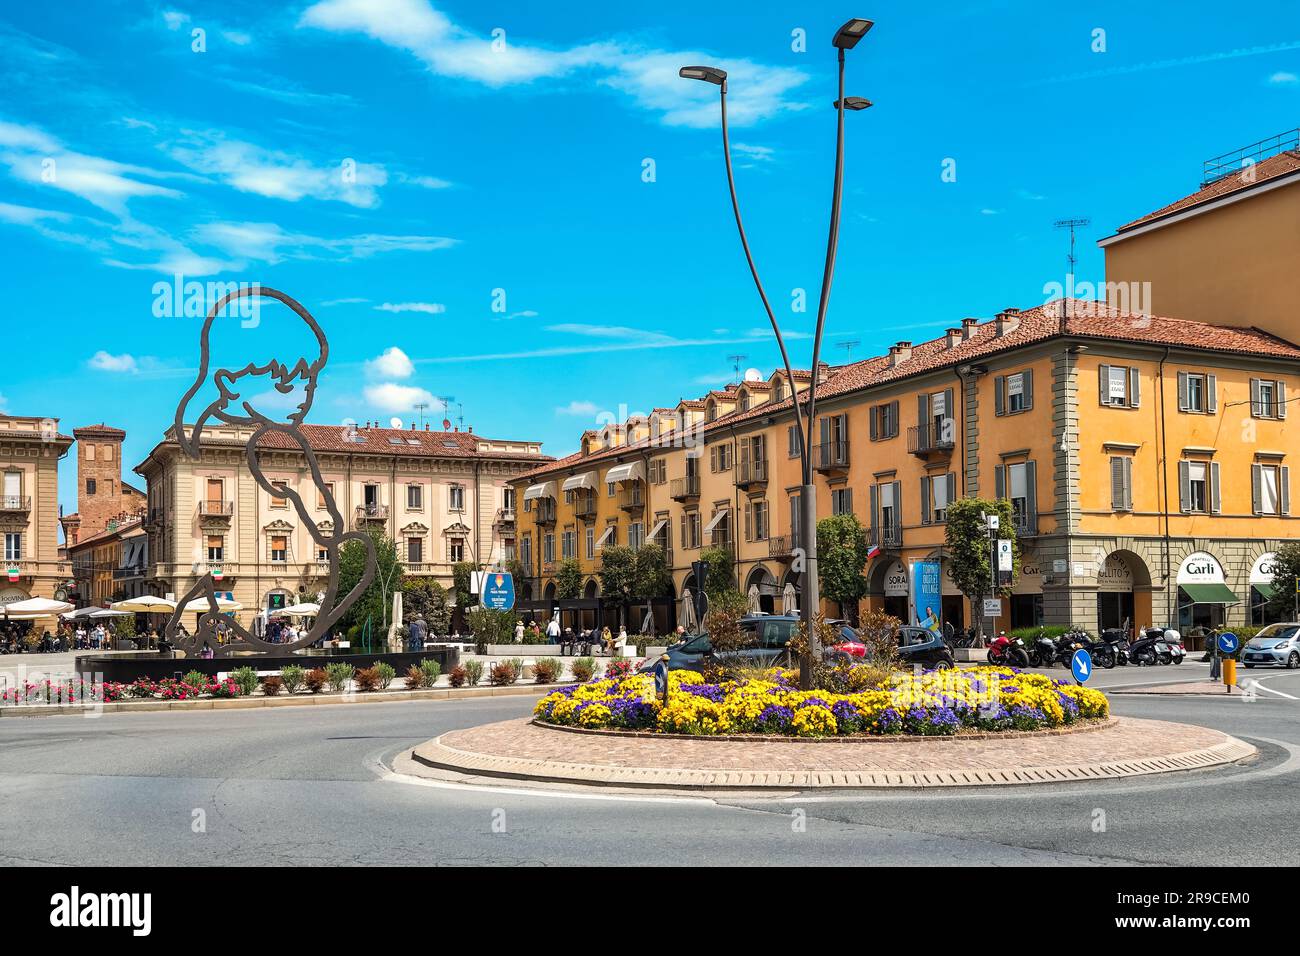 Lampione sulla rotonda decorato con fiori come piazza centrale con sculture moderne tra edifici storici sullo sfondo ad Alba, Italia. Foto Stock